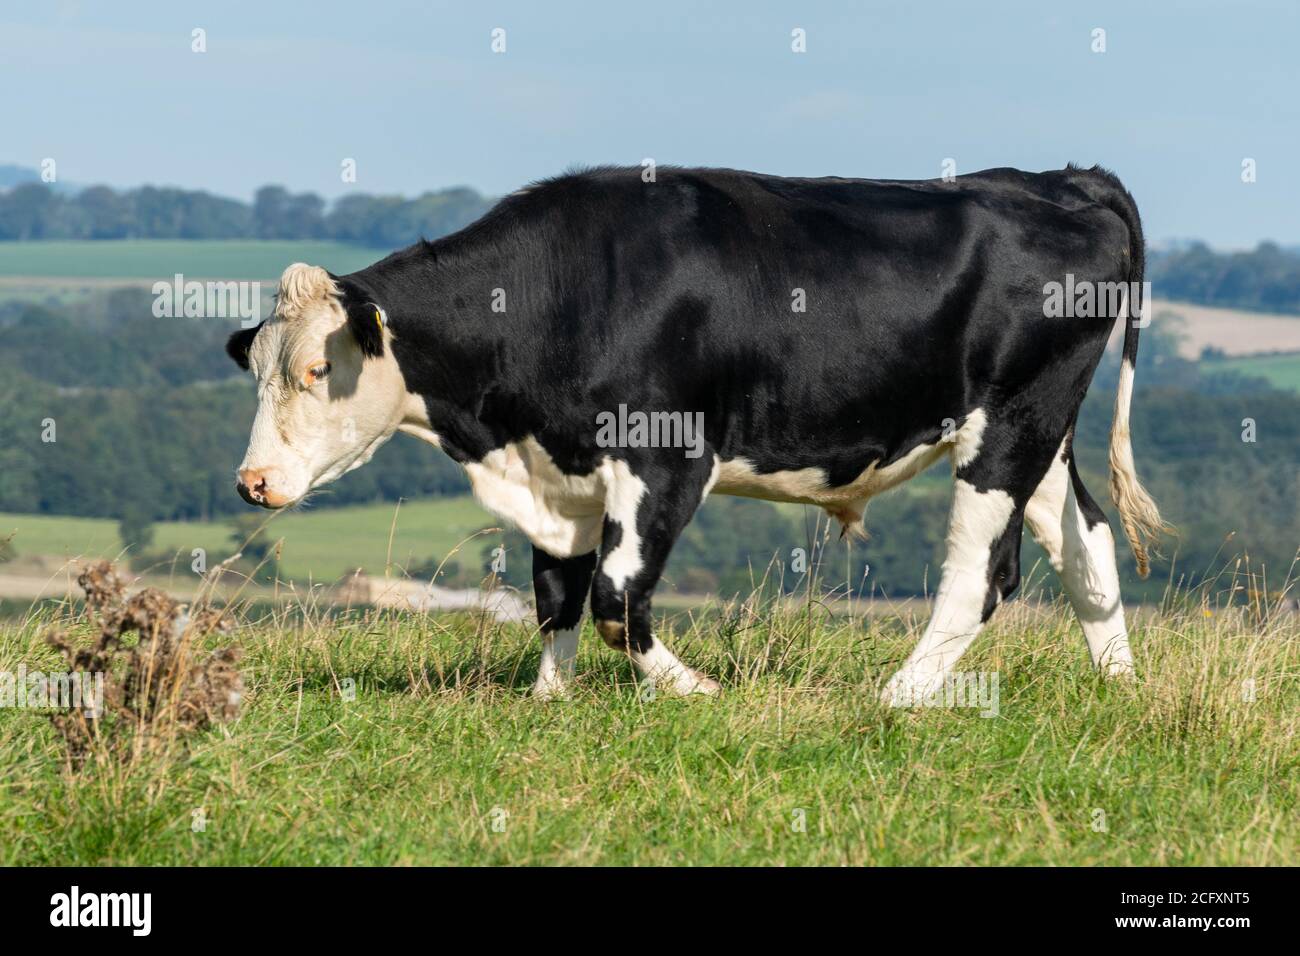 Black Hereford Steer, eine Kreuzung von Rindern, die aus Hereford-Rindsbullen mit Holstein-Friesischen Milchkühen hergestellt werden Stockfoto